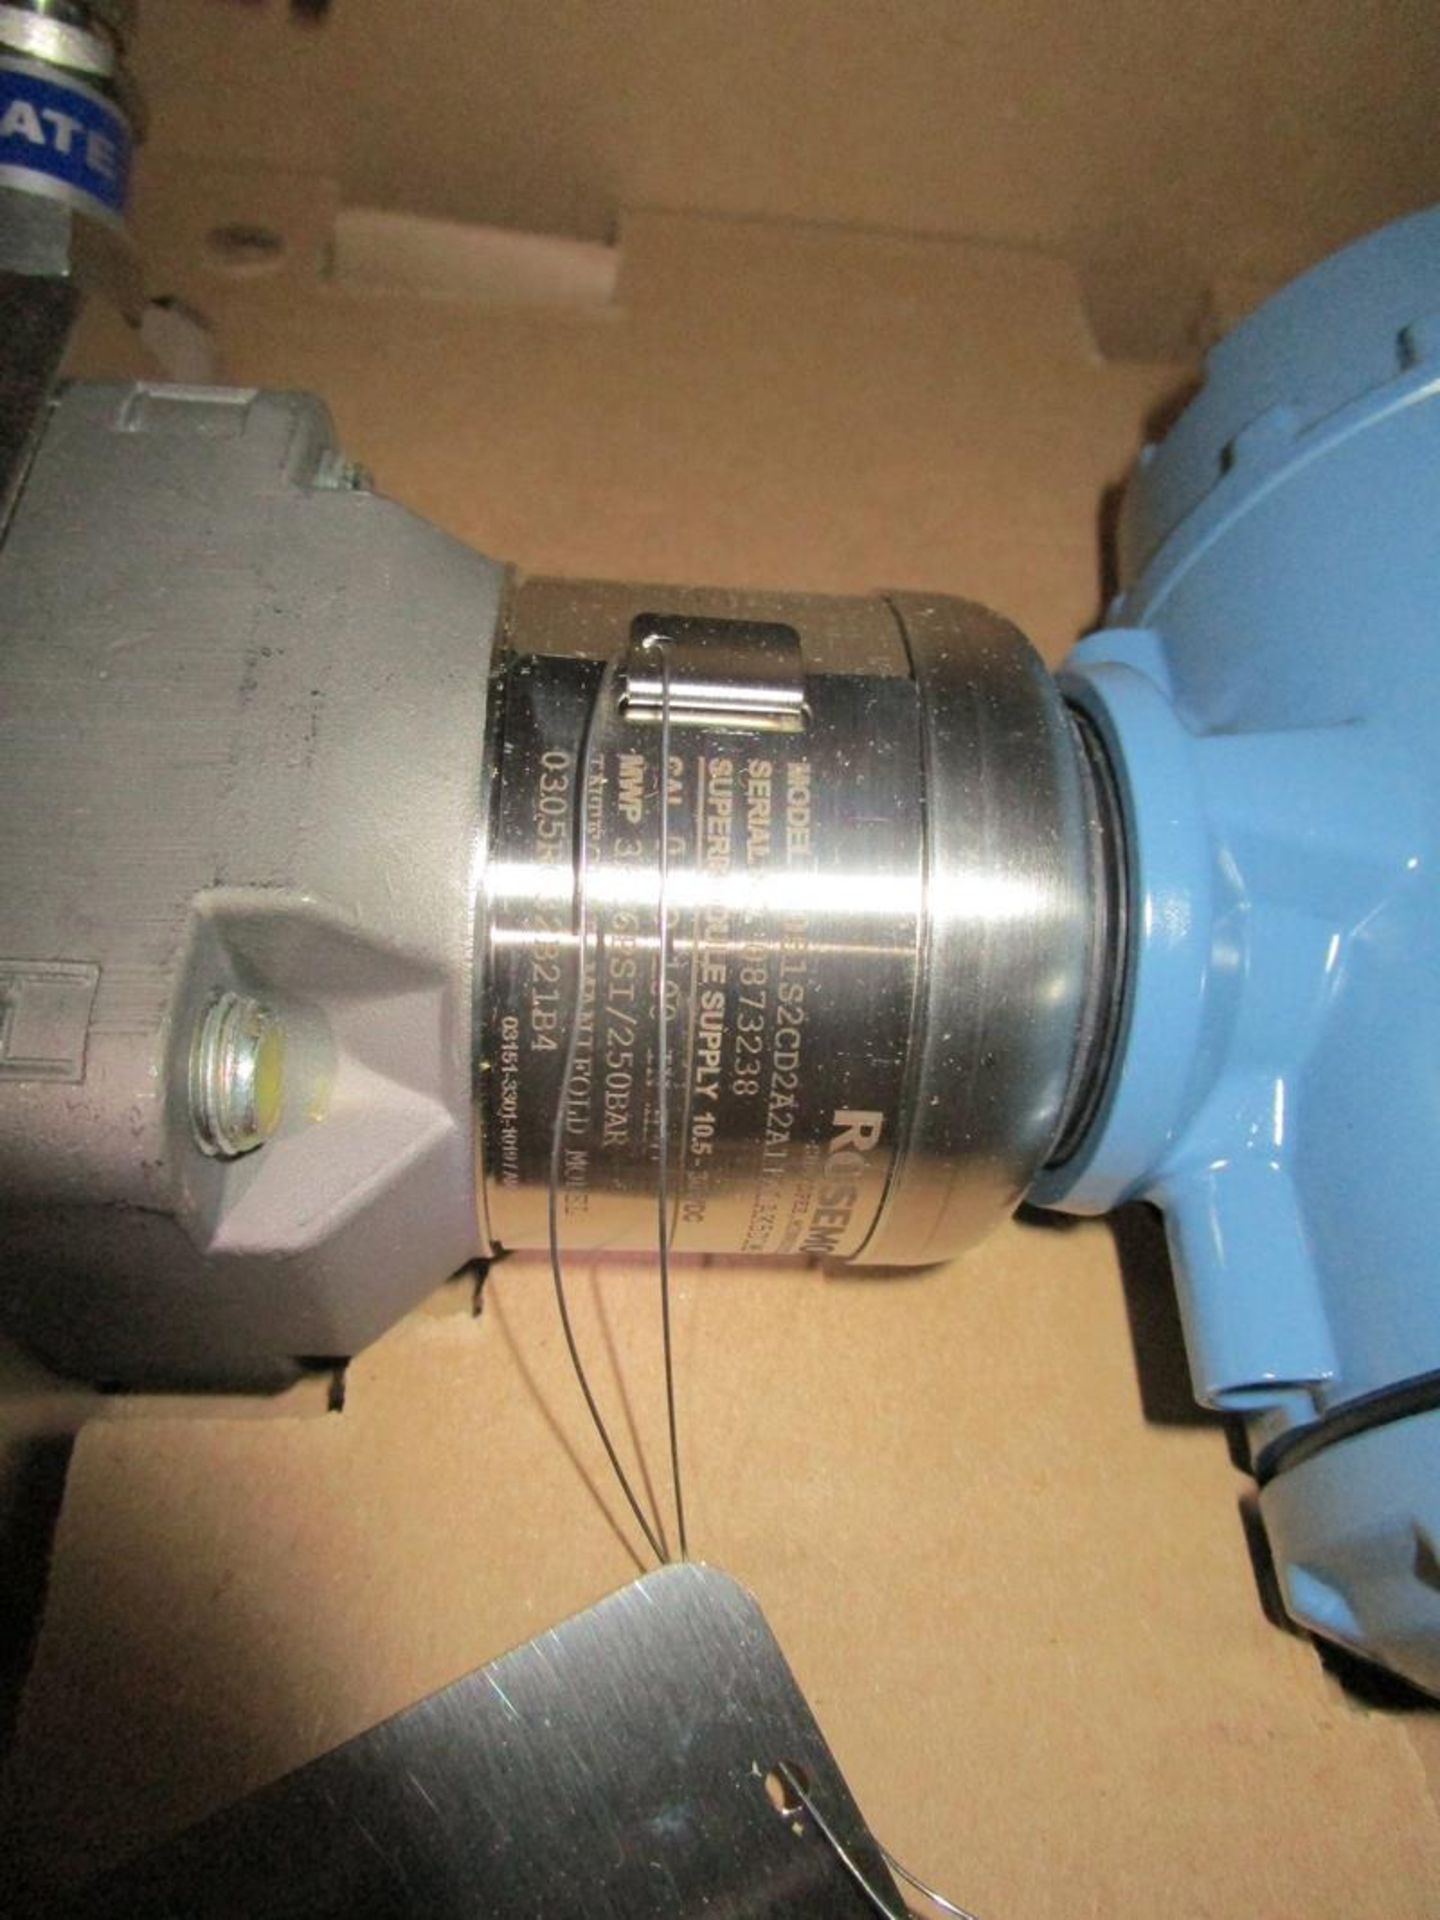 Unused Rosemount 3051 Series Pressure Transmitter With Flow Meter - Image 2 of 2